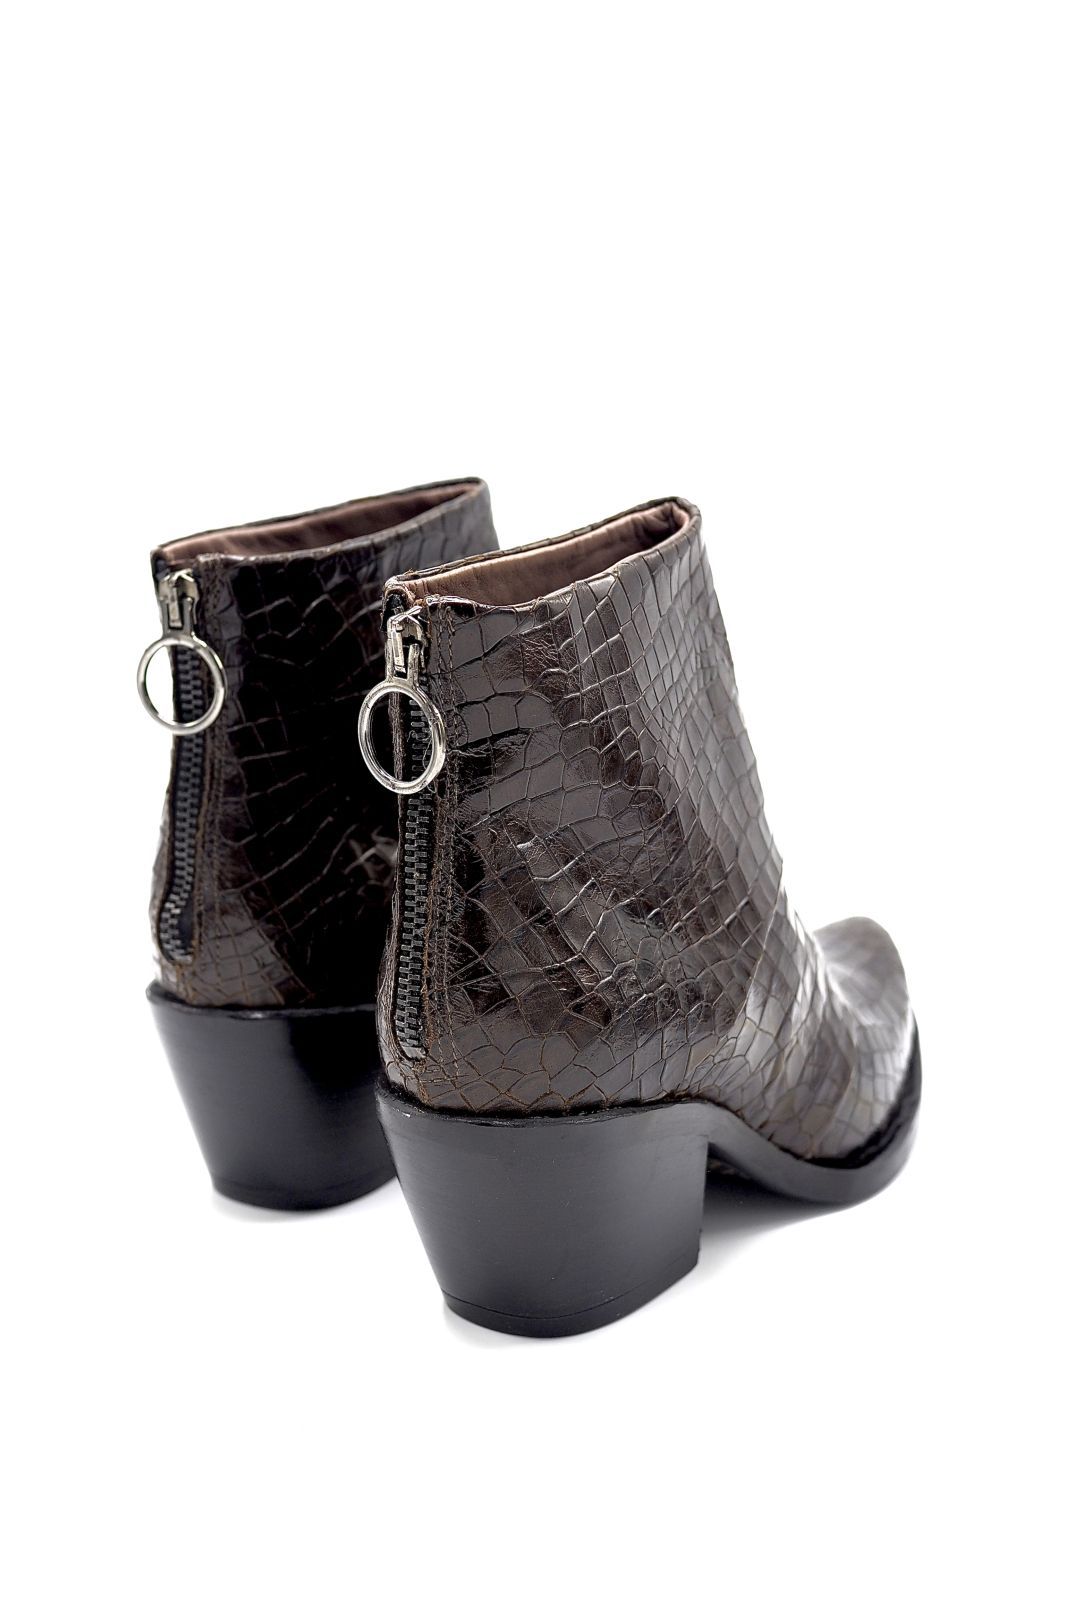 Mjus boots Brun-multi femmes (MJUS-Santiag tirette arrière - 793245 Santiag croco marron) - Marine | Much more than shoes